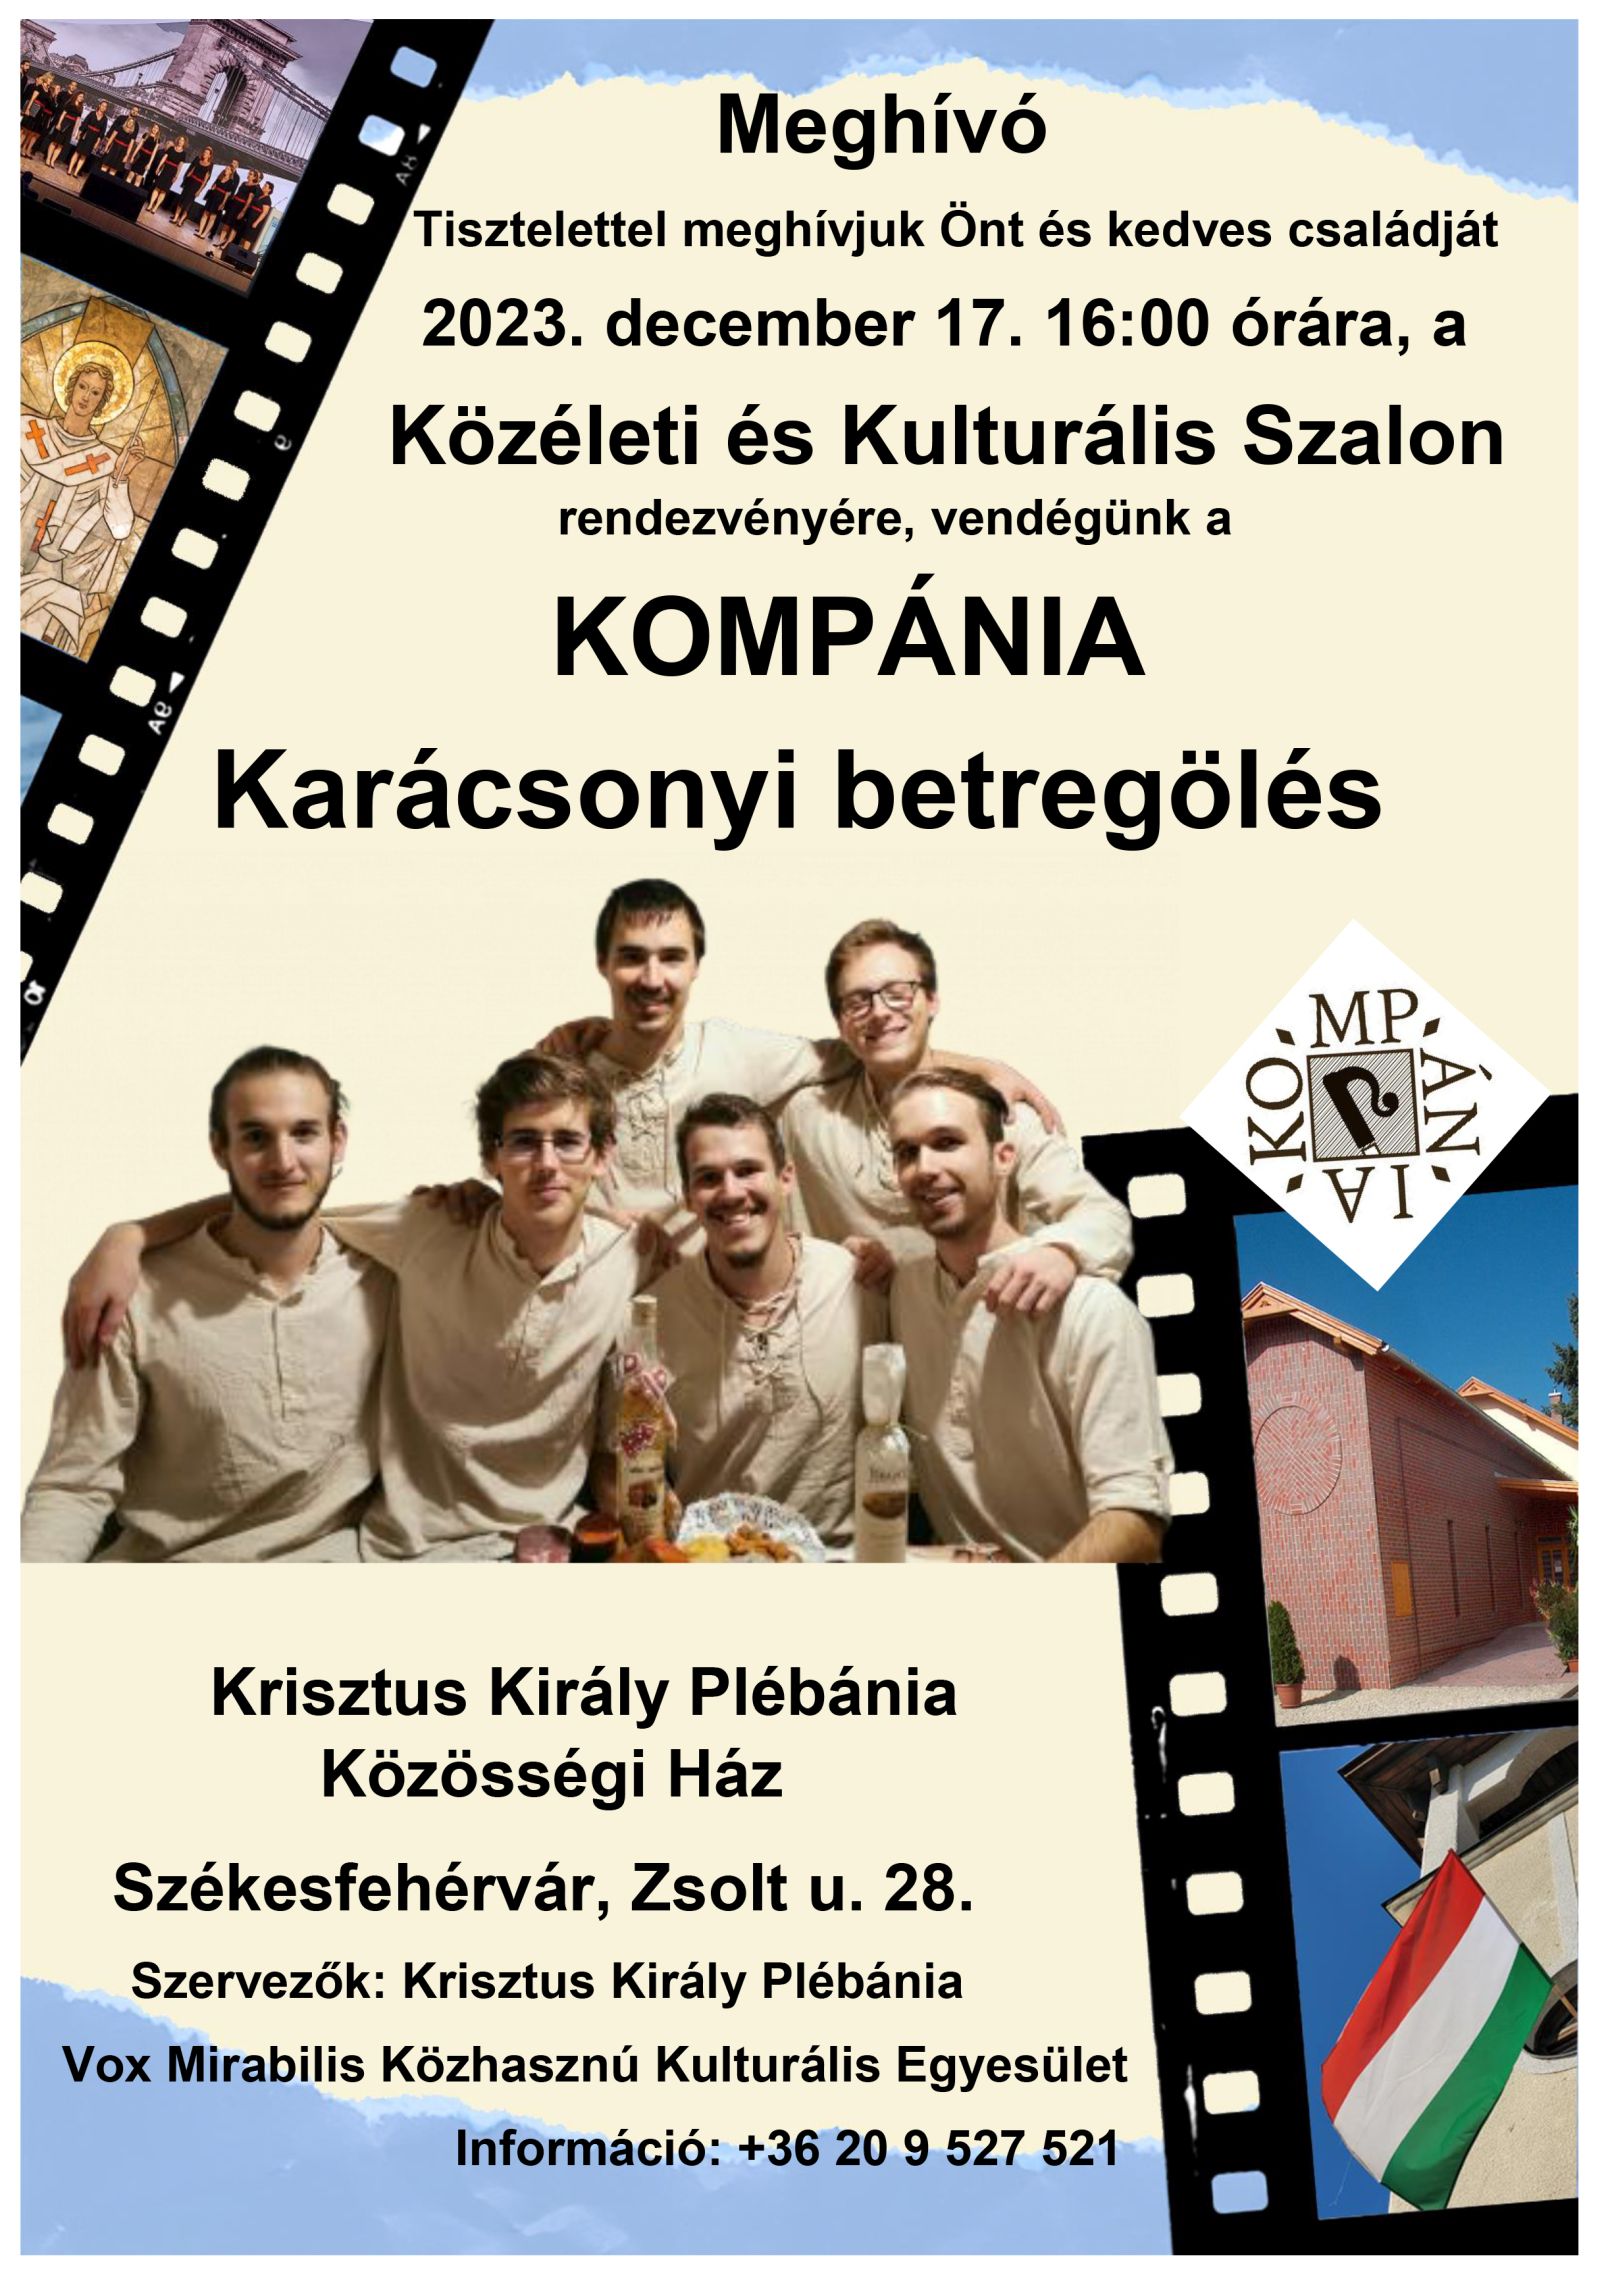 A Kompánia együttes lép fel a Közéleti és Kulturális Szalonban vasárnap